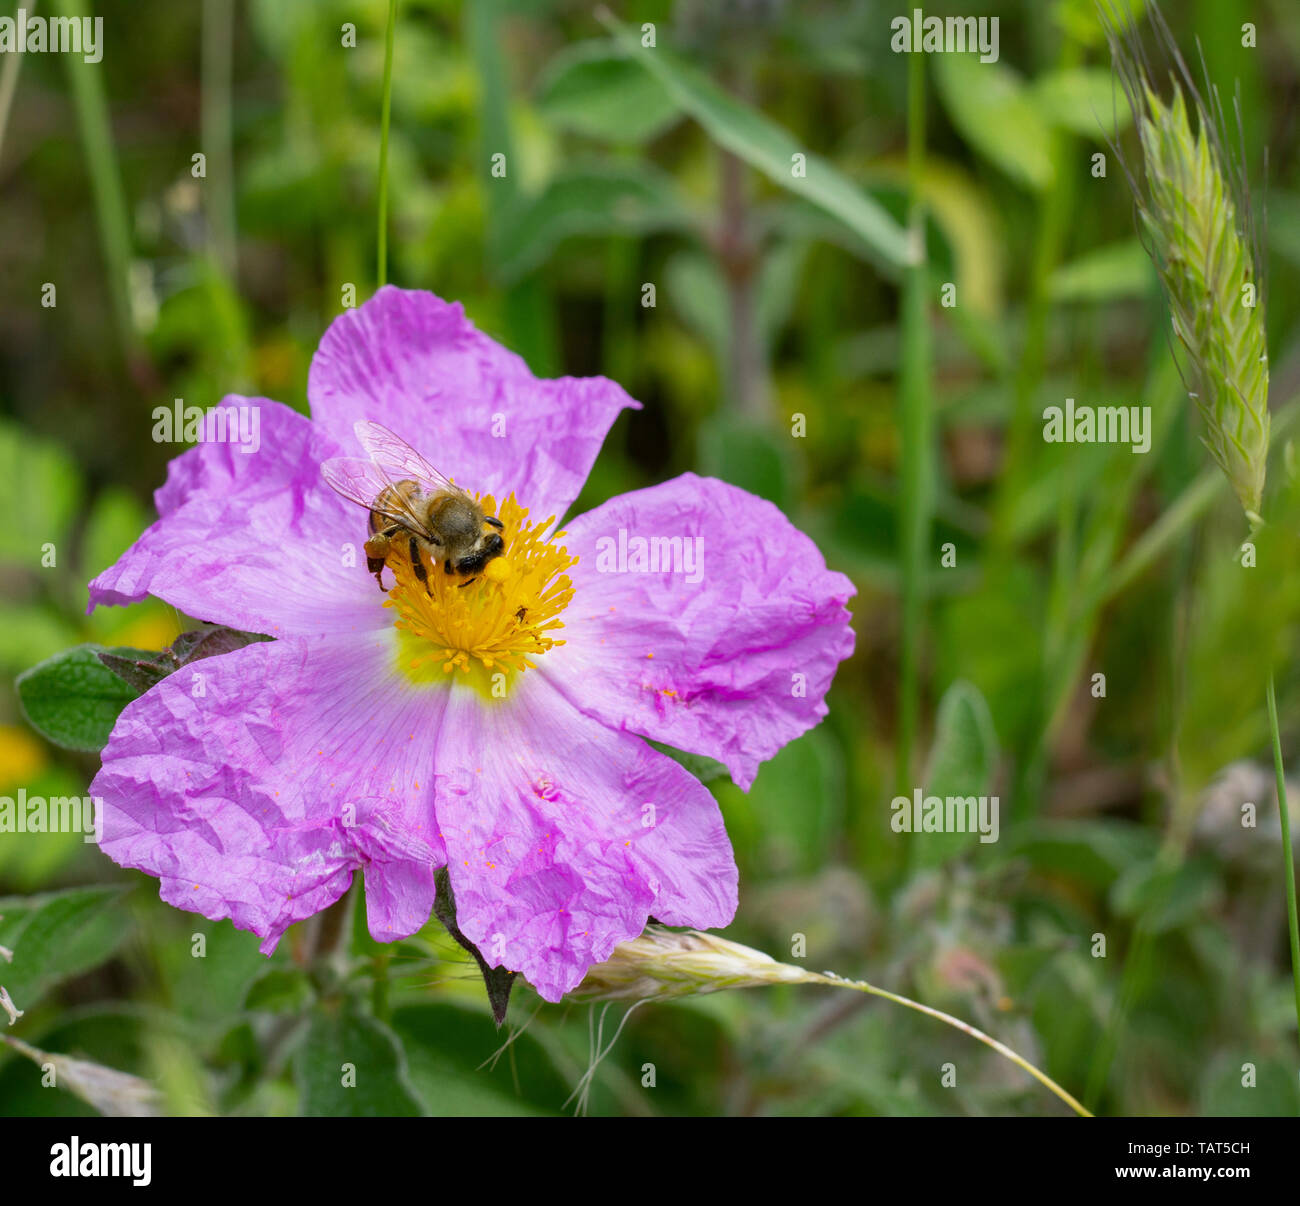 Eine Honigbiene Nektar sammeln auf eine rosa Blüte cistrose oder zistrosen (Cystus incanus ssp. tauricus) oder (Cistus Creticus) Stockfoto